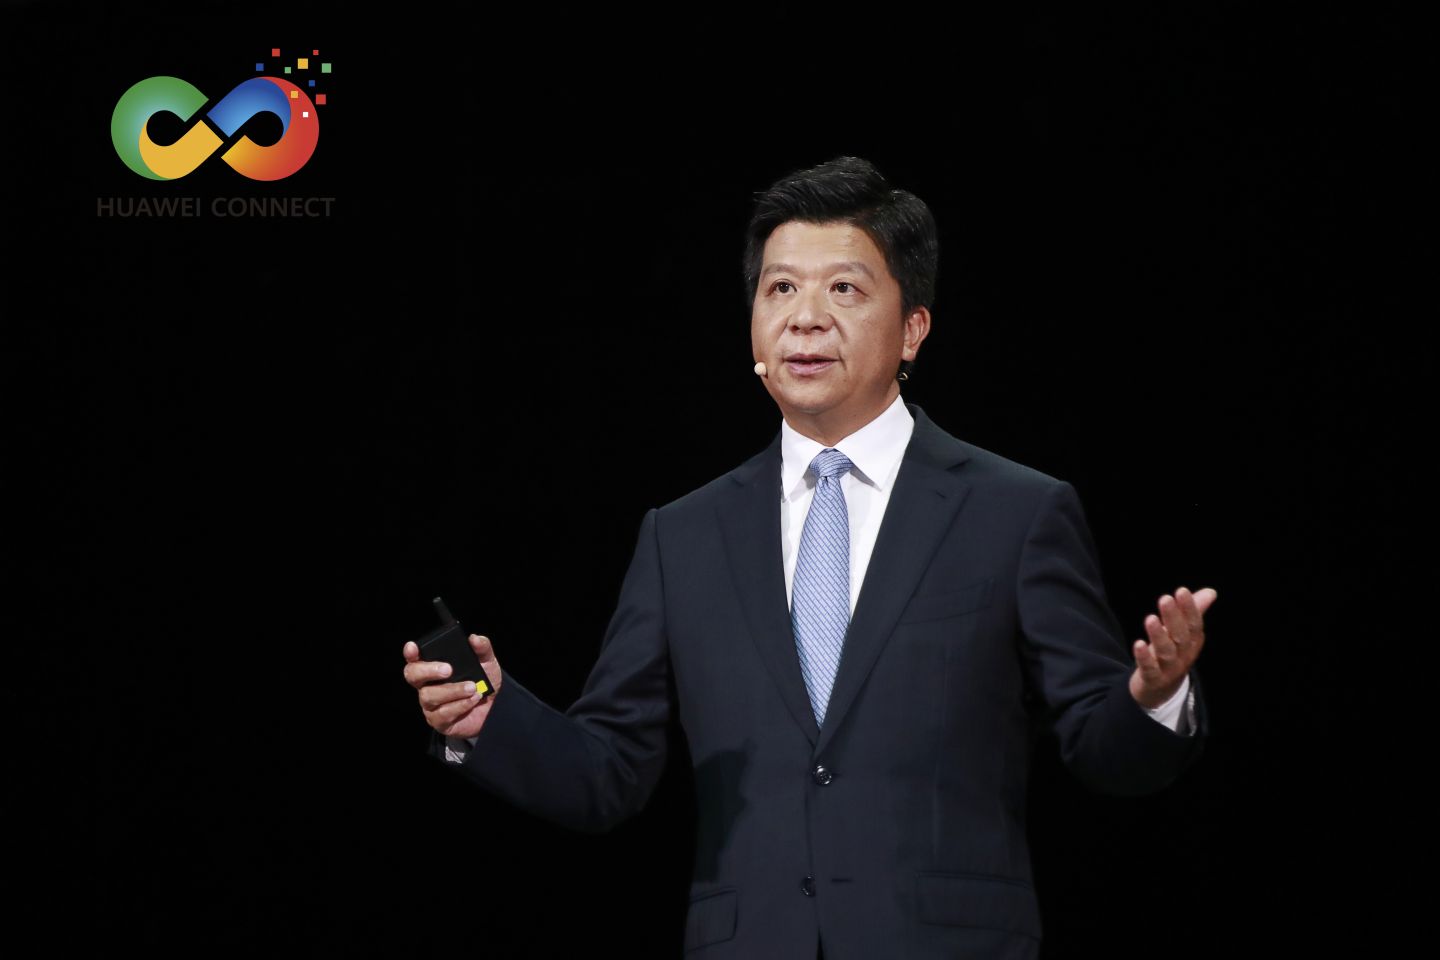 Huawei genera un nuevo valor gracias a la sinergia de 5 campos tecnológicos